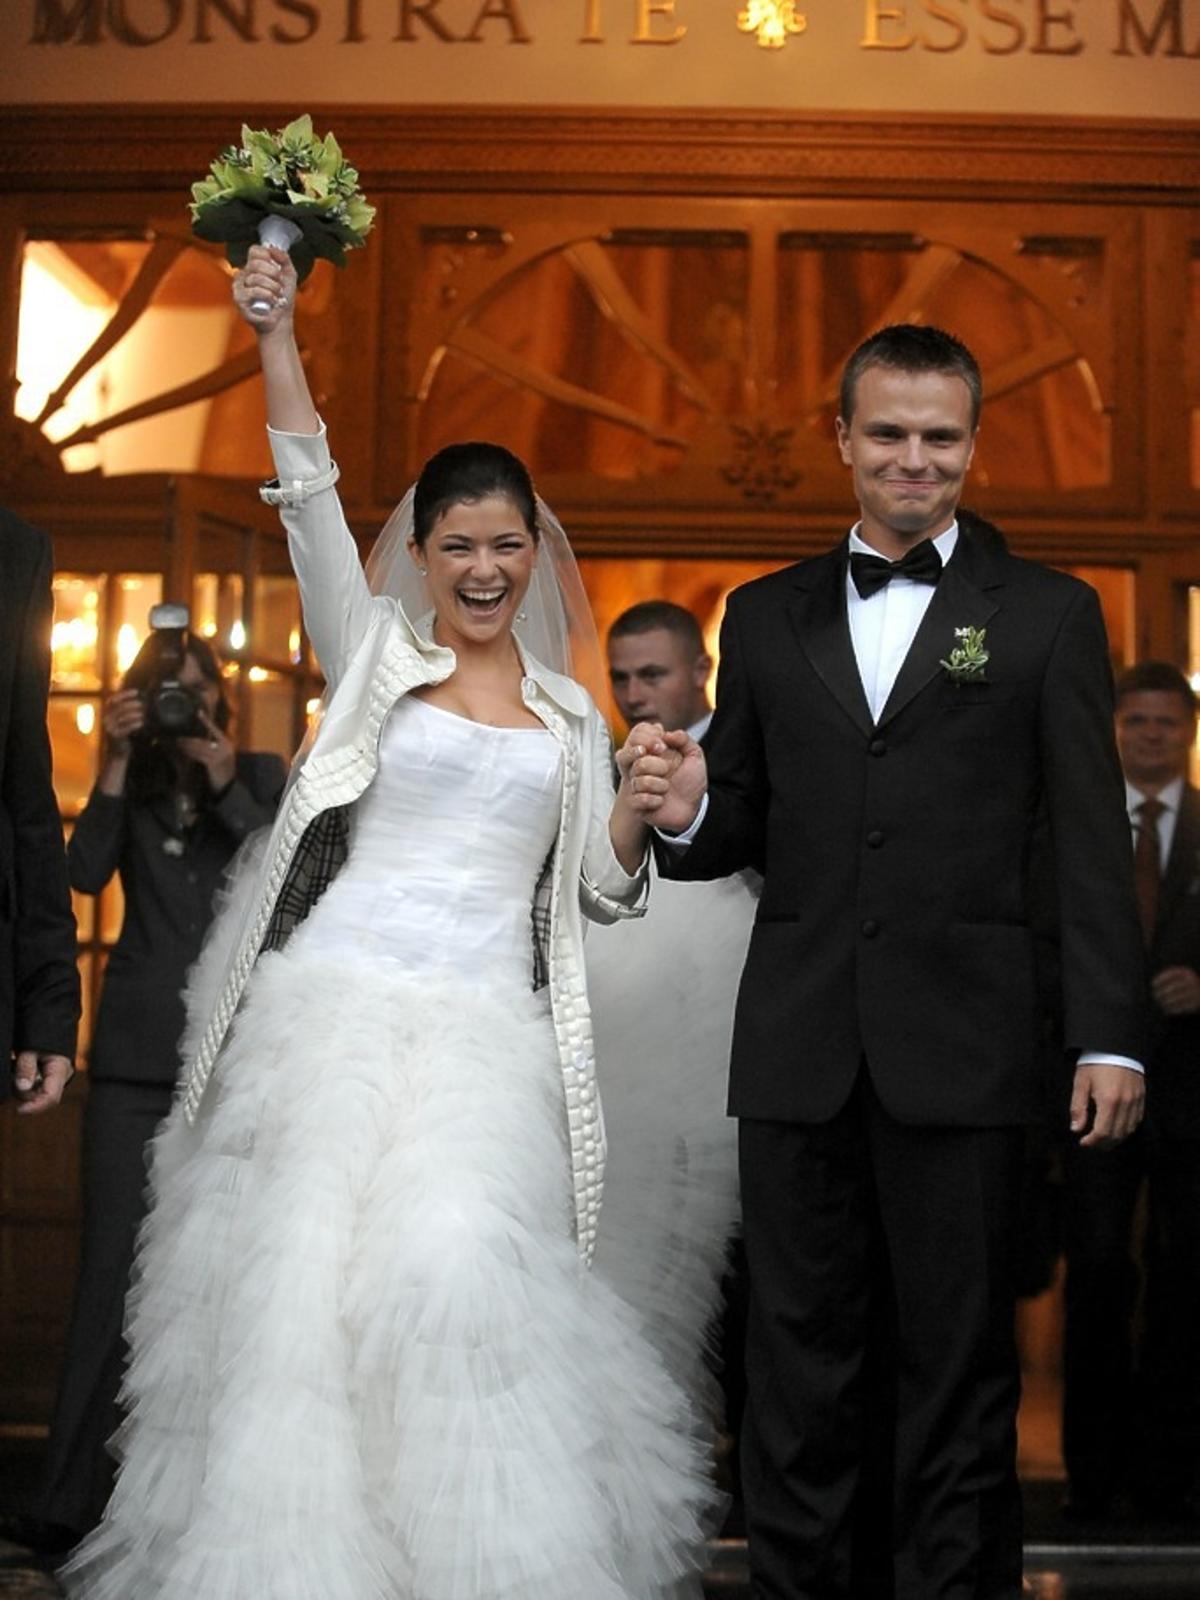 Katarzyna Cichopek w białej sukni ślubnej z bukietem kwiatów. Marcin Hakiel w czarnym, ciemnym garniturze z muchą